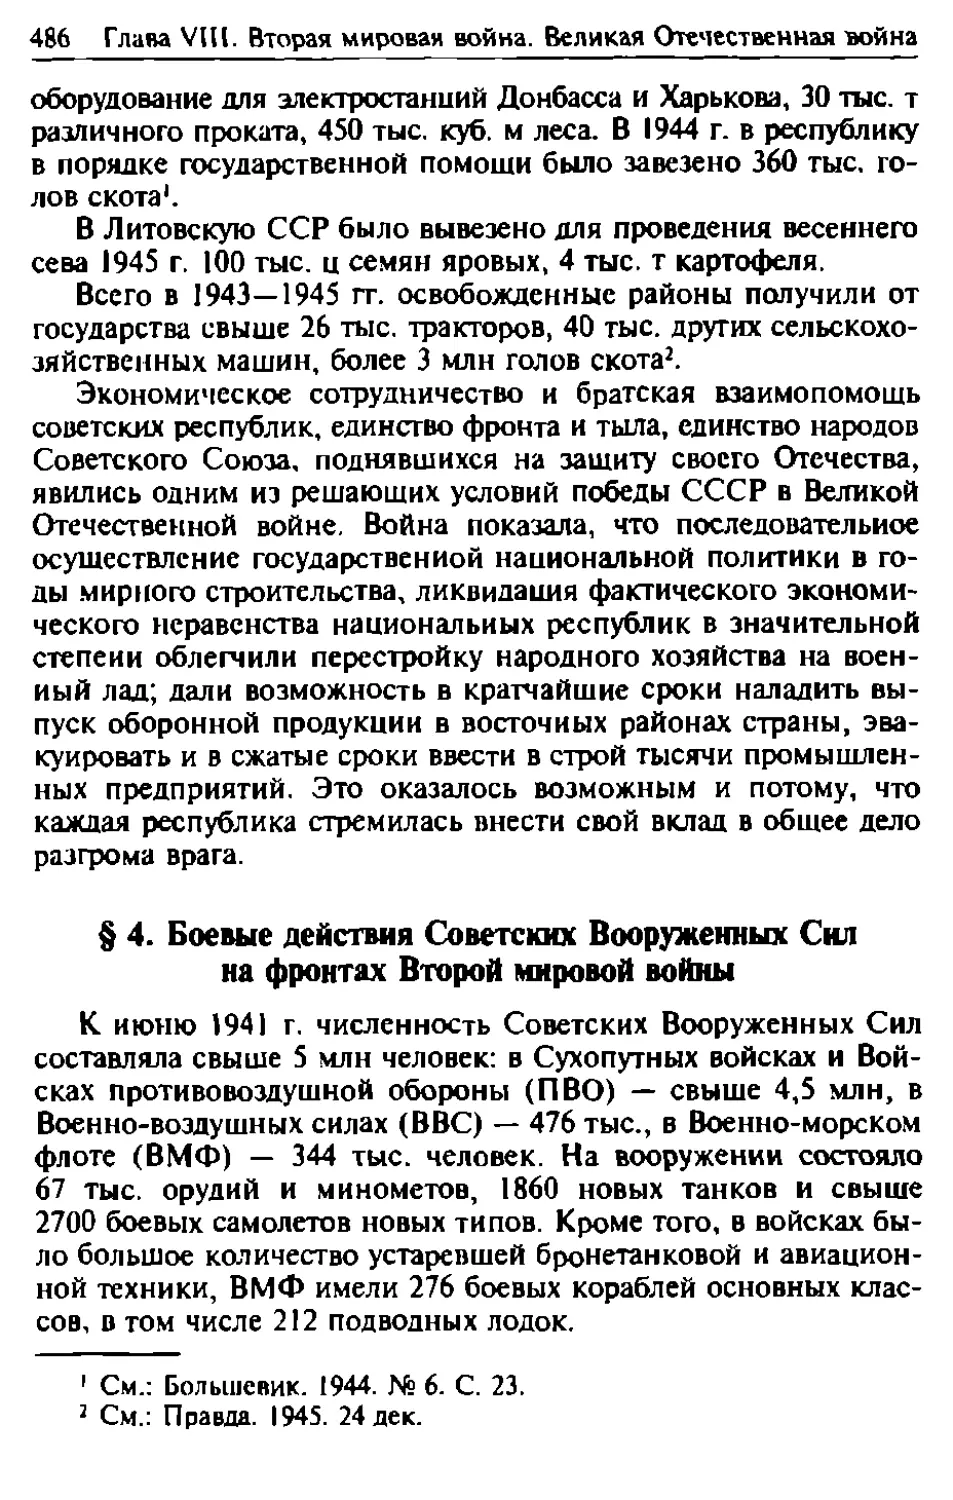 § 4. Боевые действия Советских Вооруженных Сил на фронтах Второй мировой войны